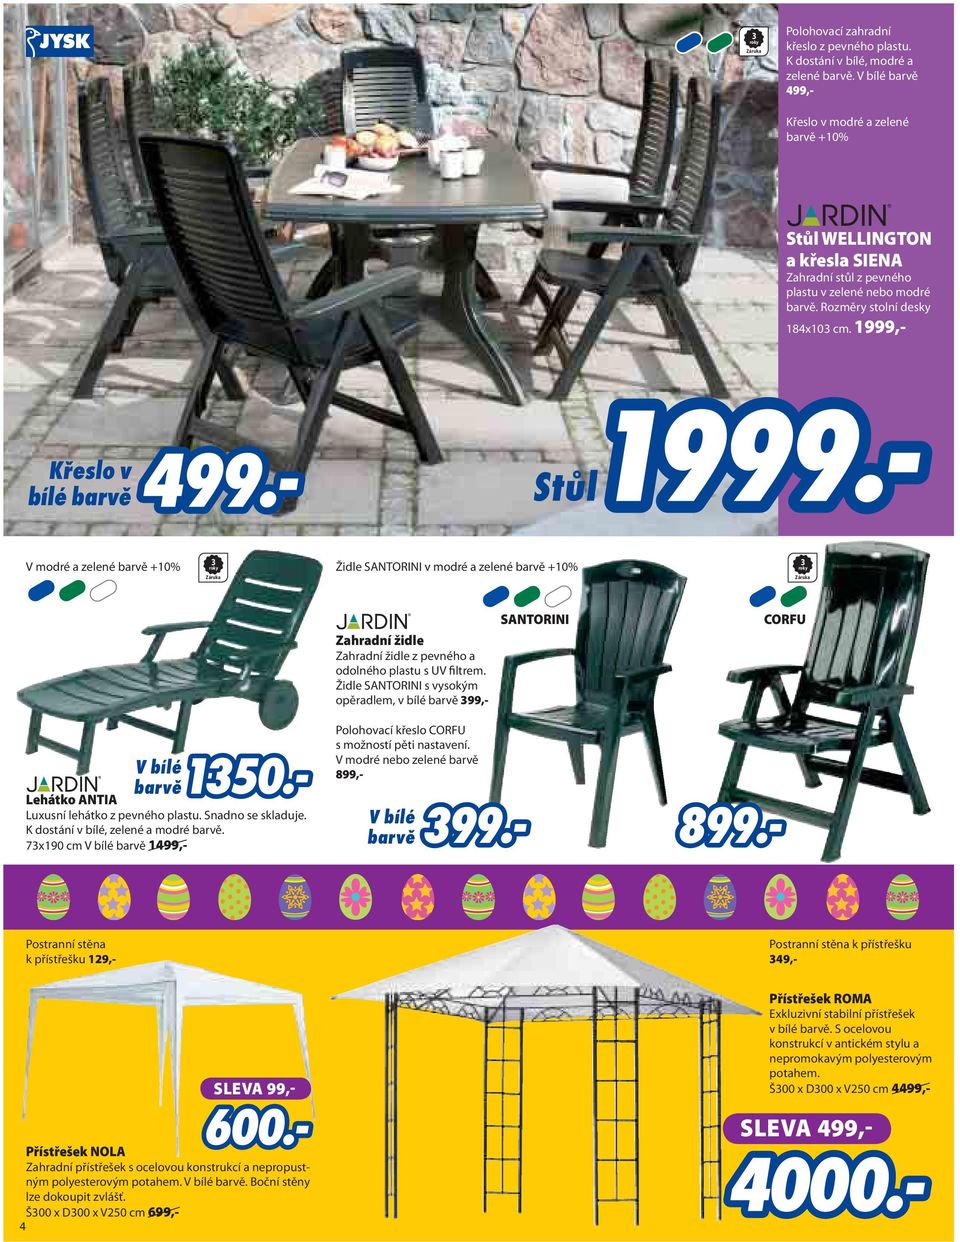 1999,- V modré a zelené barvě +10% 3 roky Záruka Židle SANTORINI v modré a zelené barvě +10% 3 roky Záruka Zahradní židle Zahradní židle z pevného a odolného plastu s UV filtrem.